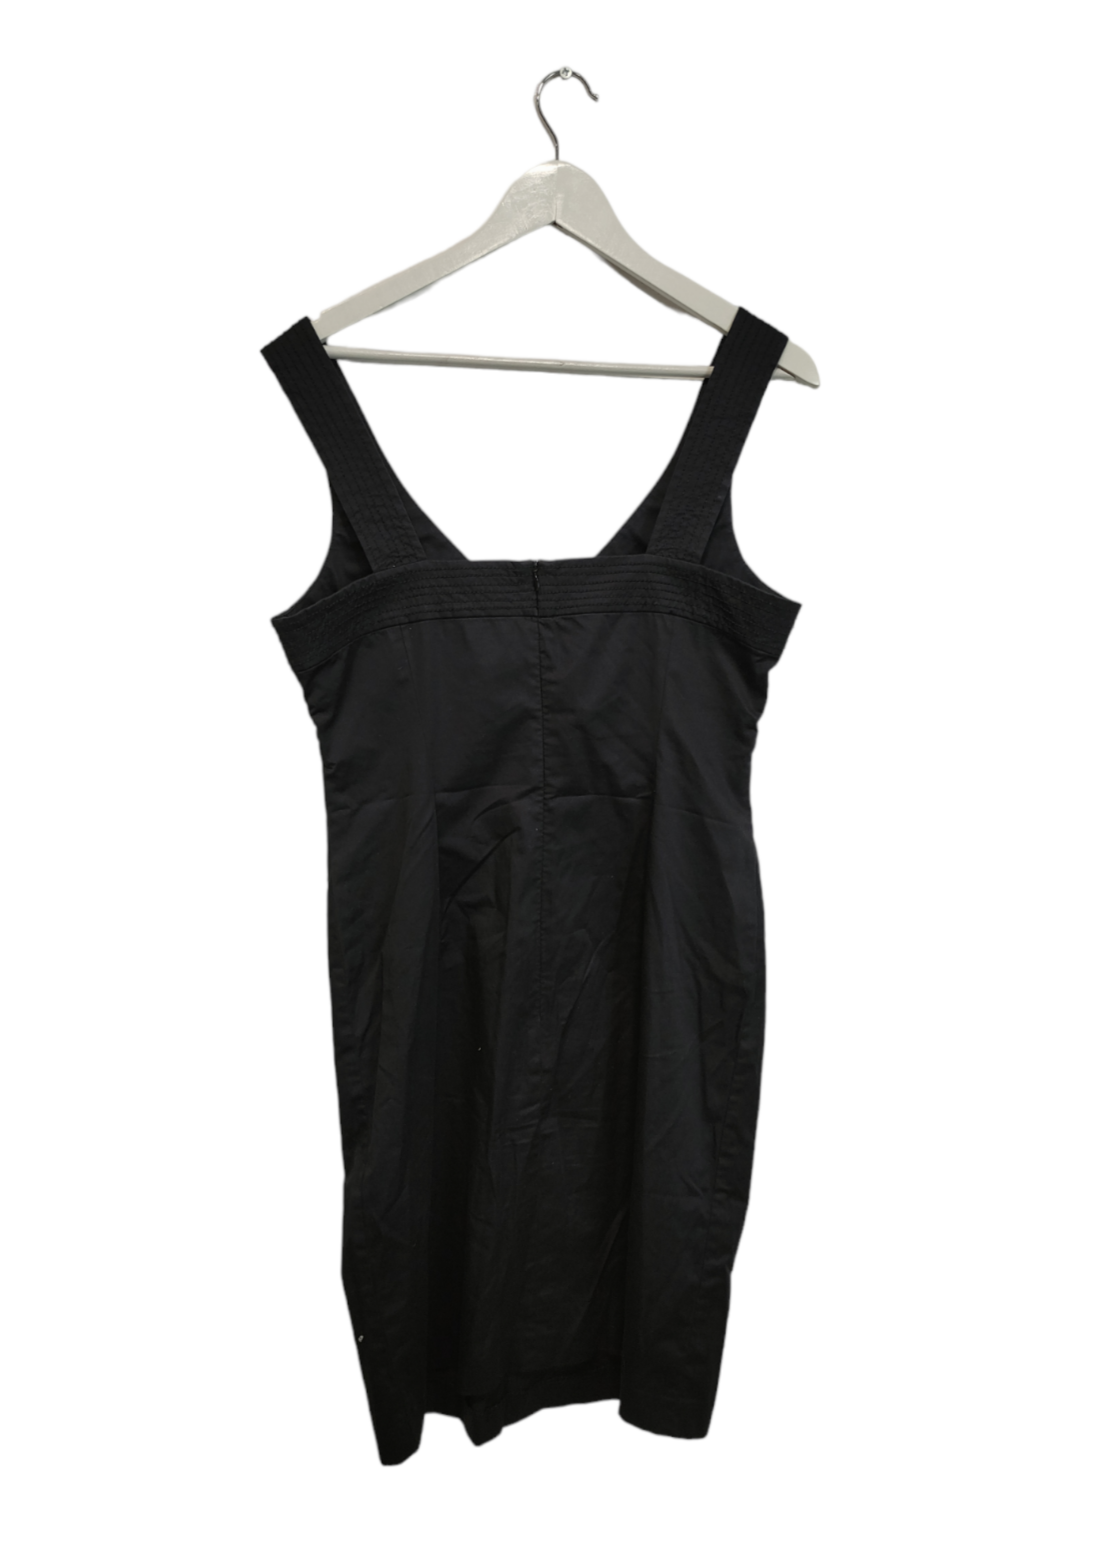 Branded, Βαμβακερό Φόρεμα με χονδρές Τιράντες σε Μαύρο χρώμα (Medium)